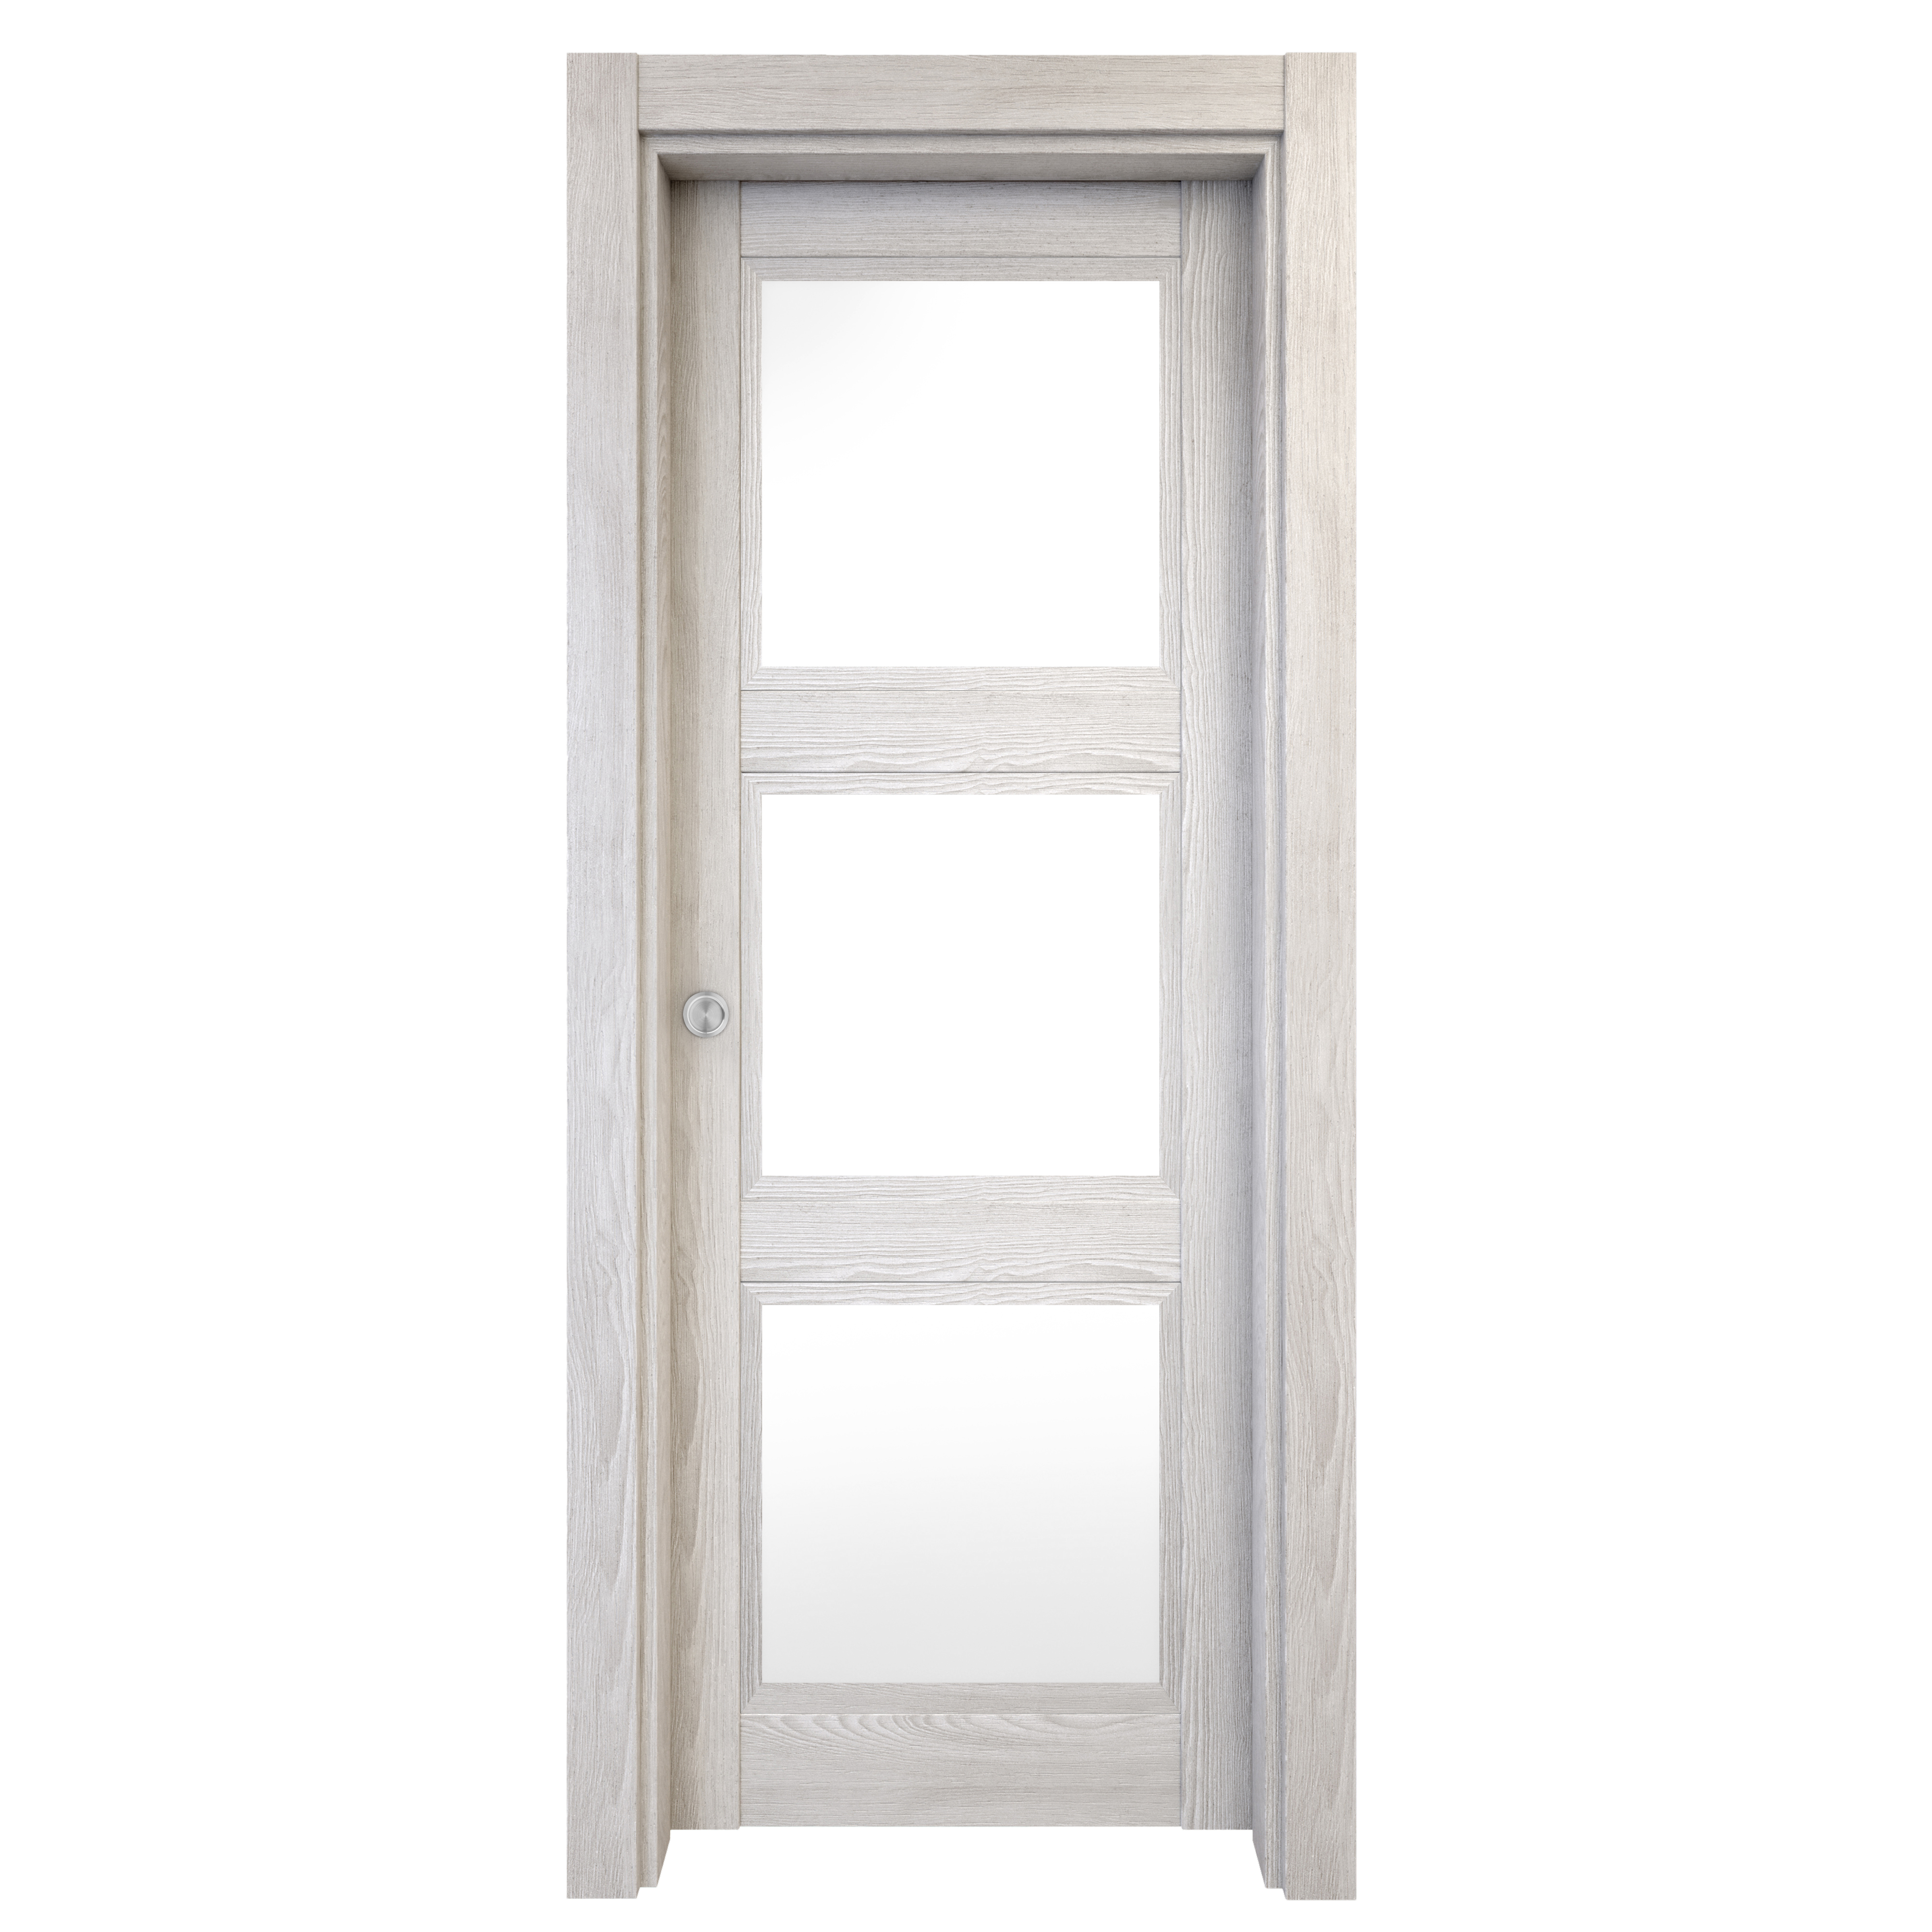 Puerta corredera moscu blanca line plus blanco con cristal de 62.5x203cm